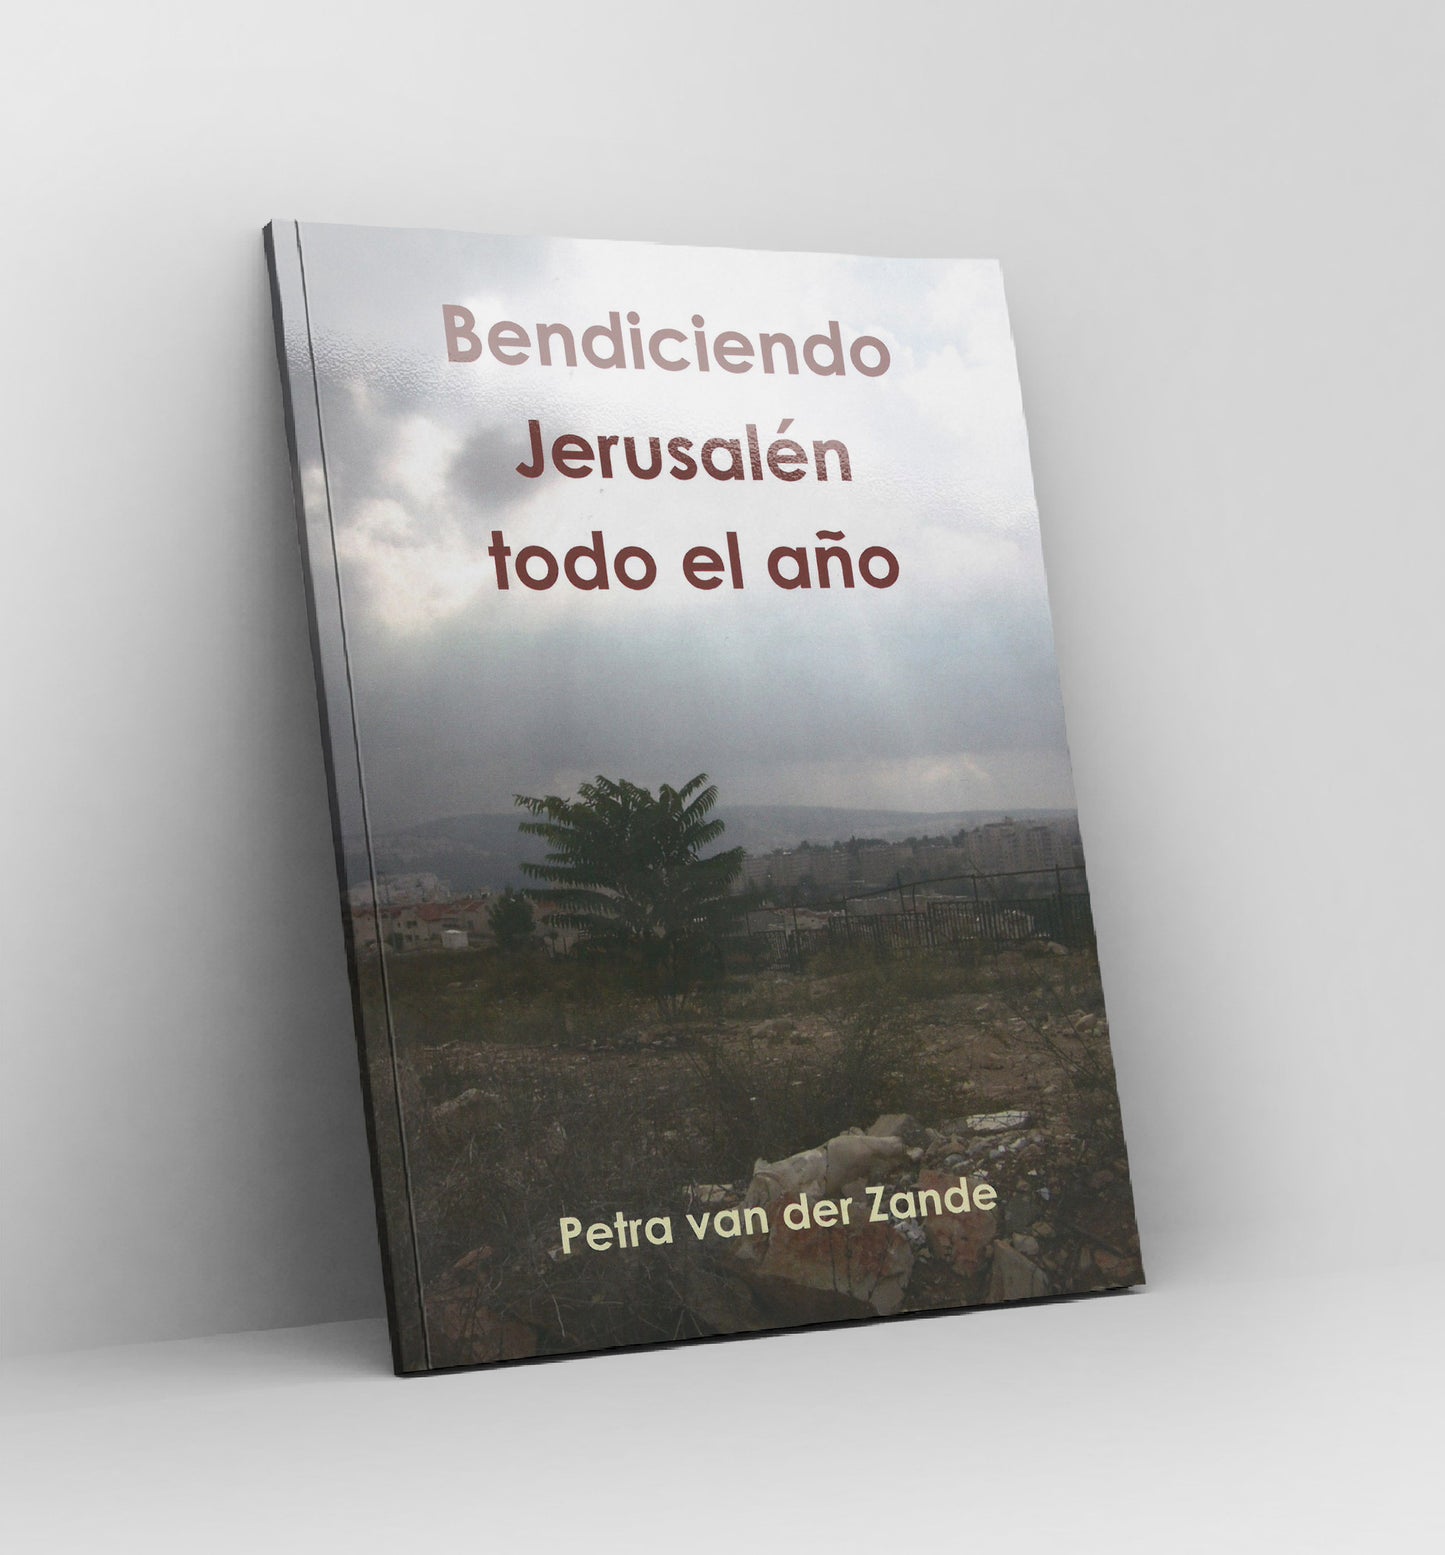 Libros - Bendiciendo Jerusalén todo el año - Por Petra van der Zande – Spanish